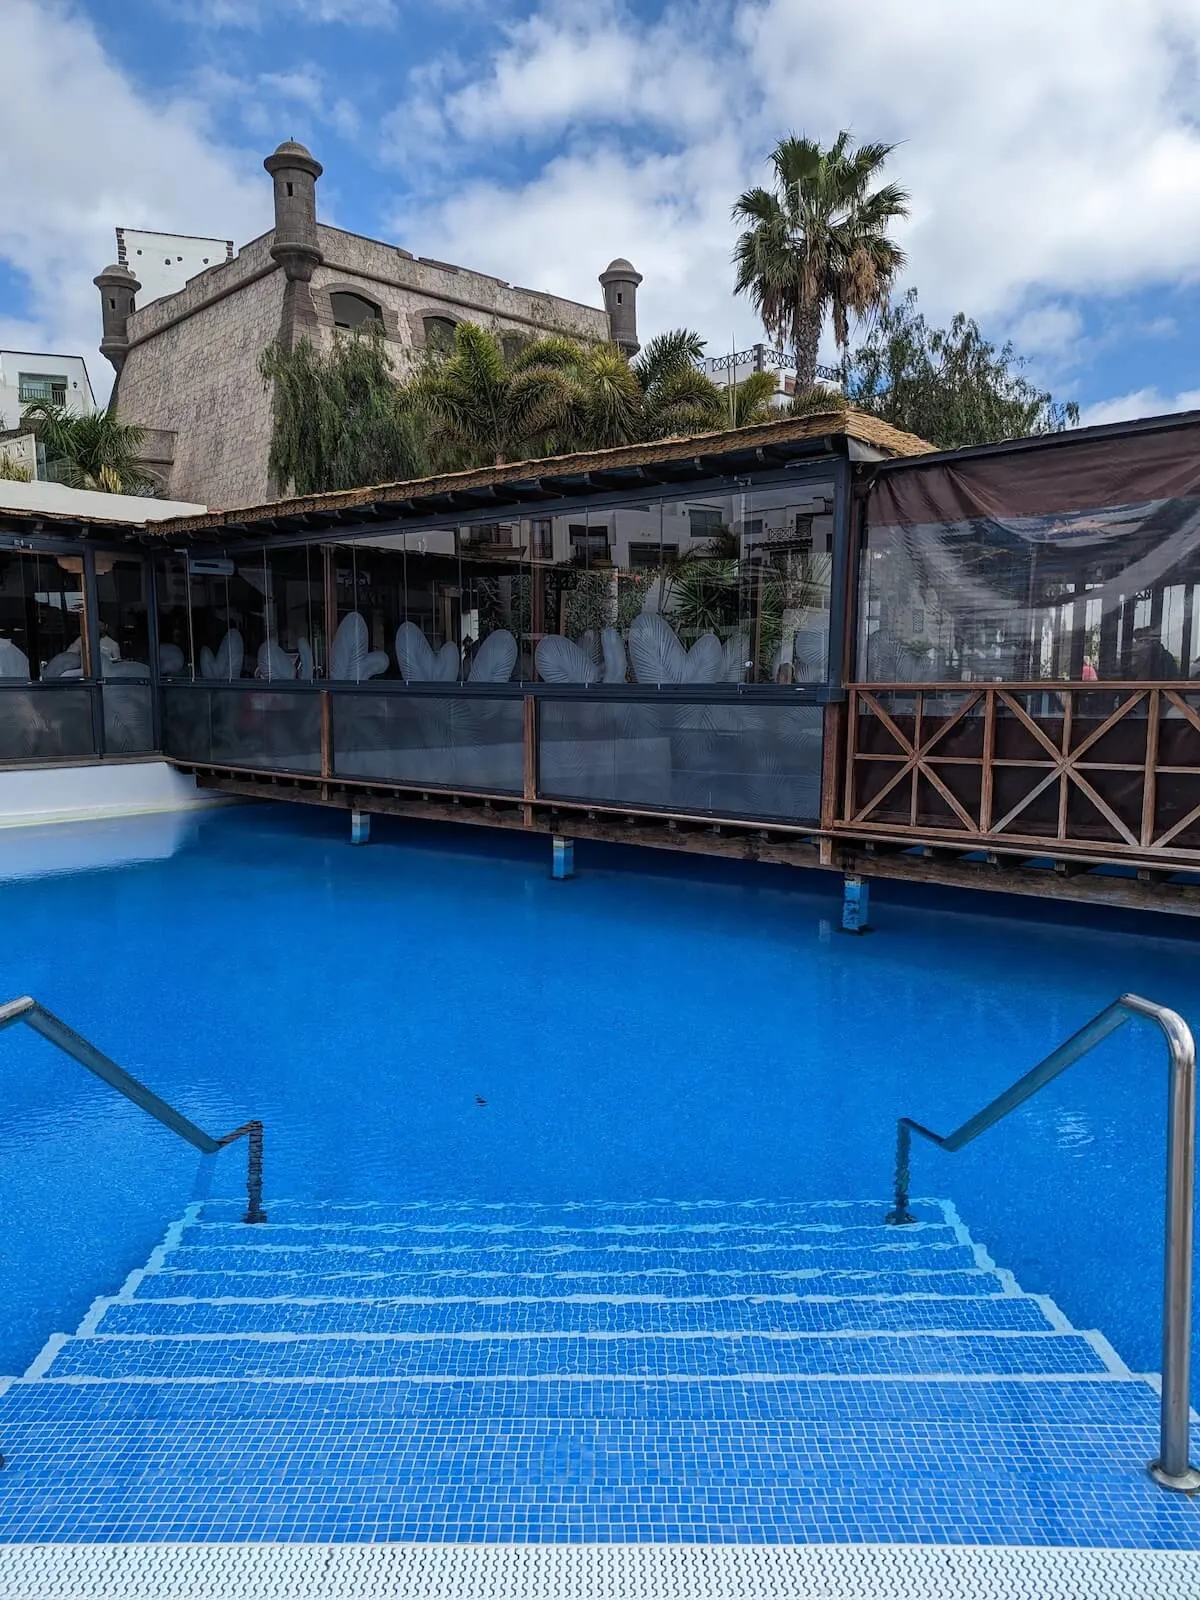 pools at the Hotel Gran Castillo Tagoro